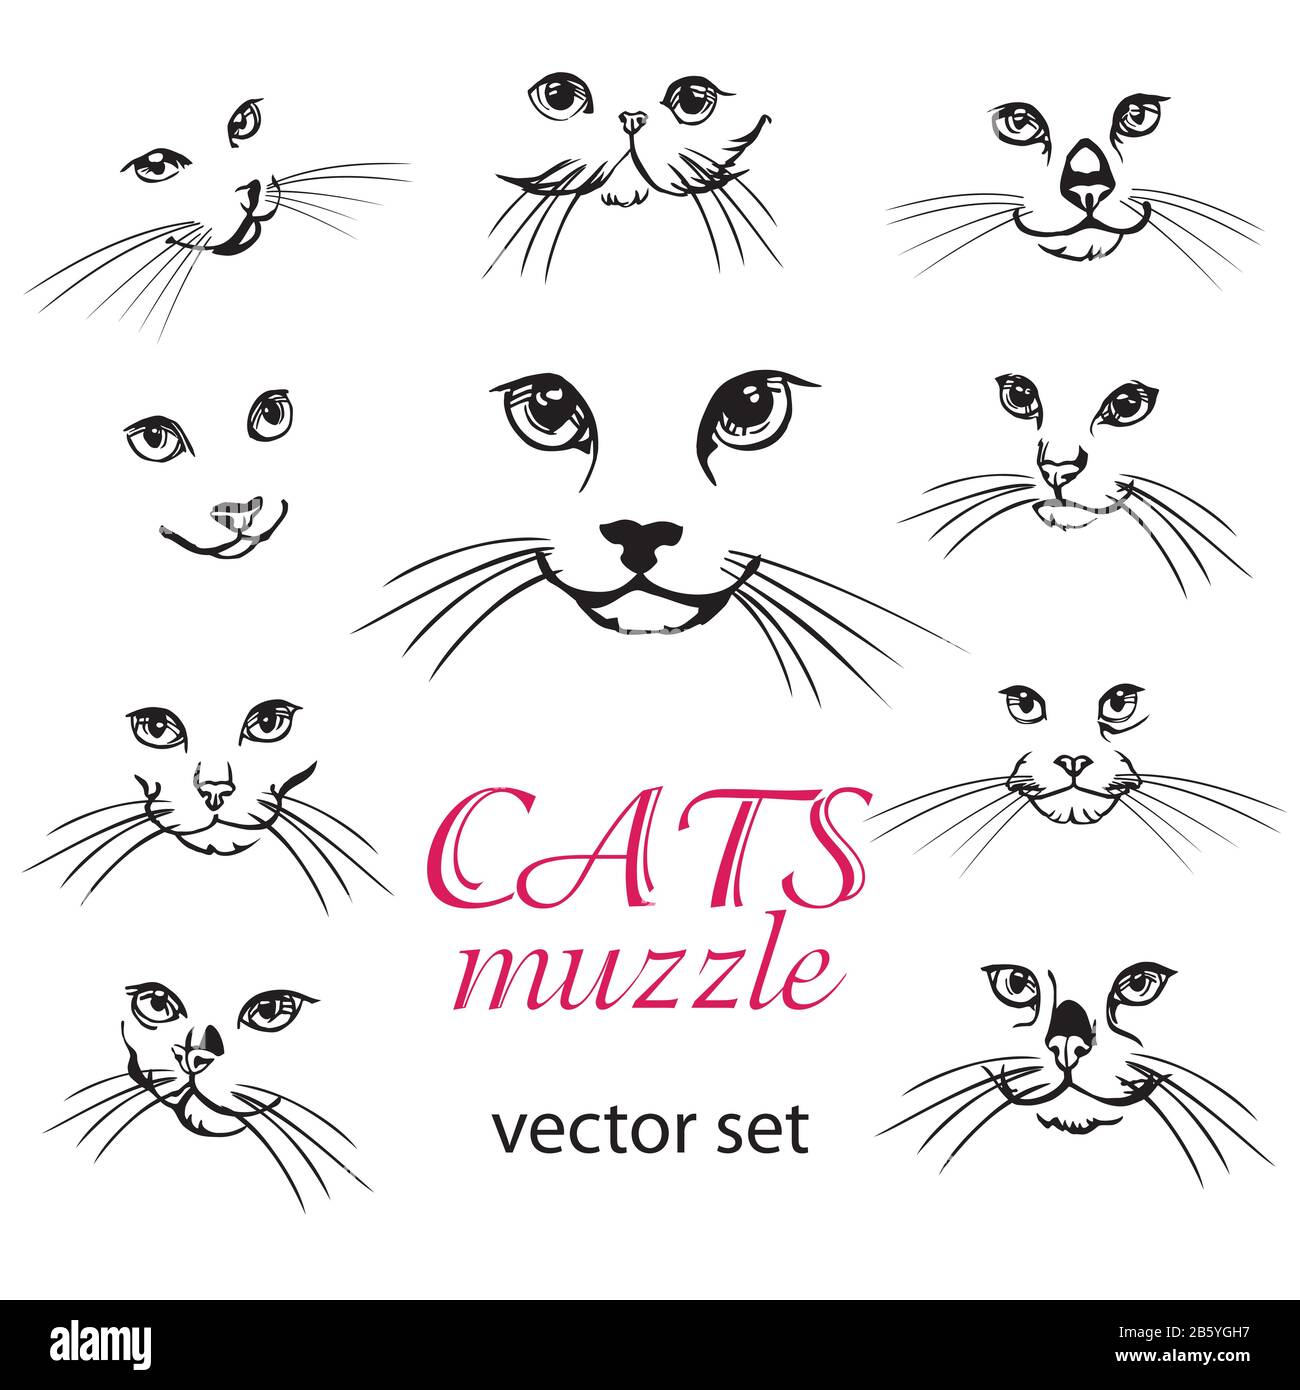 Illustration vectorielle abstraite du jeu de musele de chats. Ensemble de modèles de logo Cats. Étiquette d'icône d'animal abstrait. Fond d'illustration plat avec chat Illustration de Vecteur